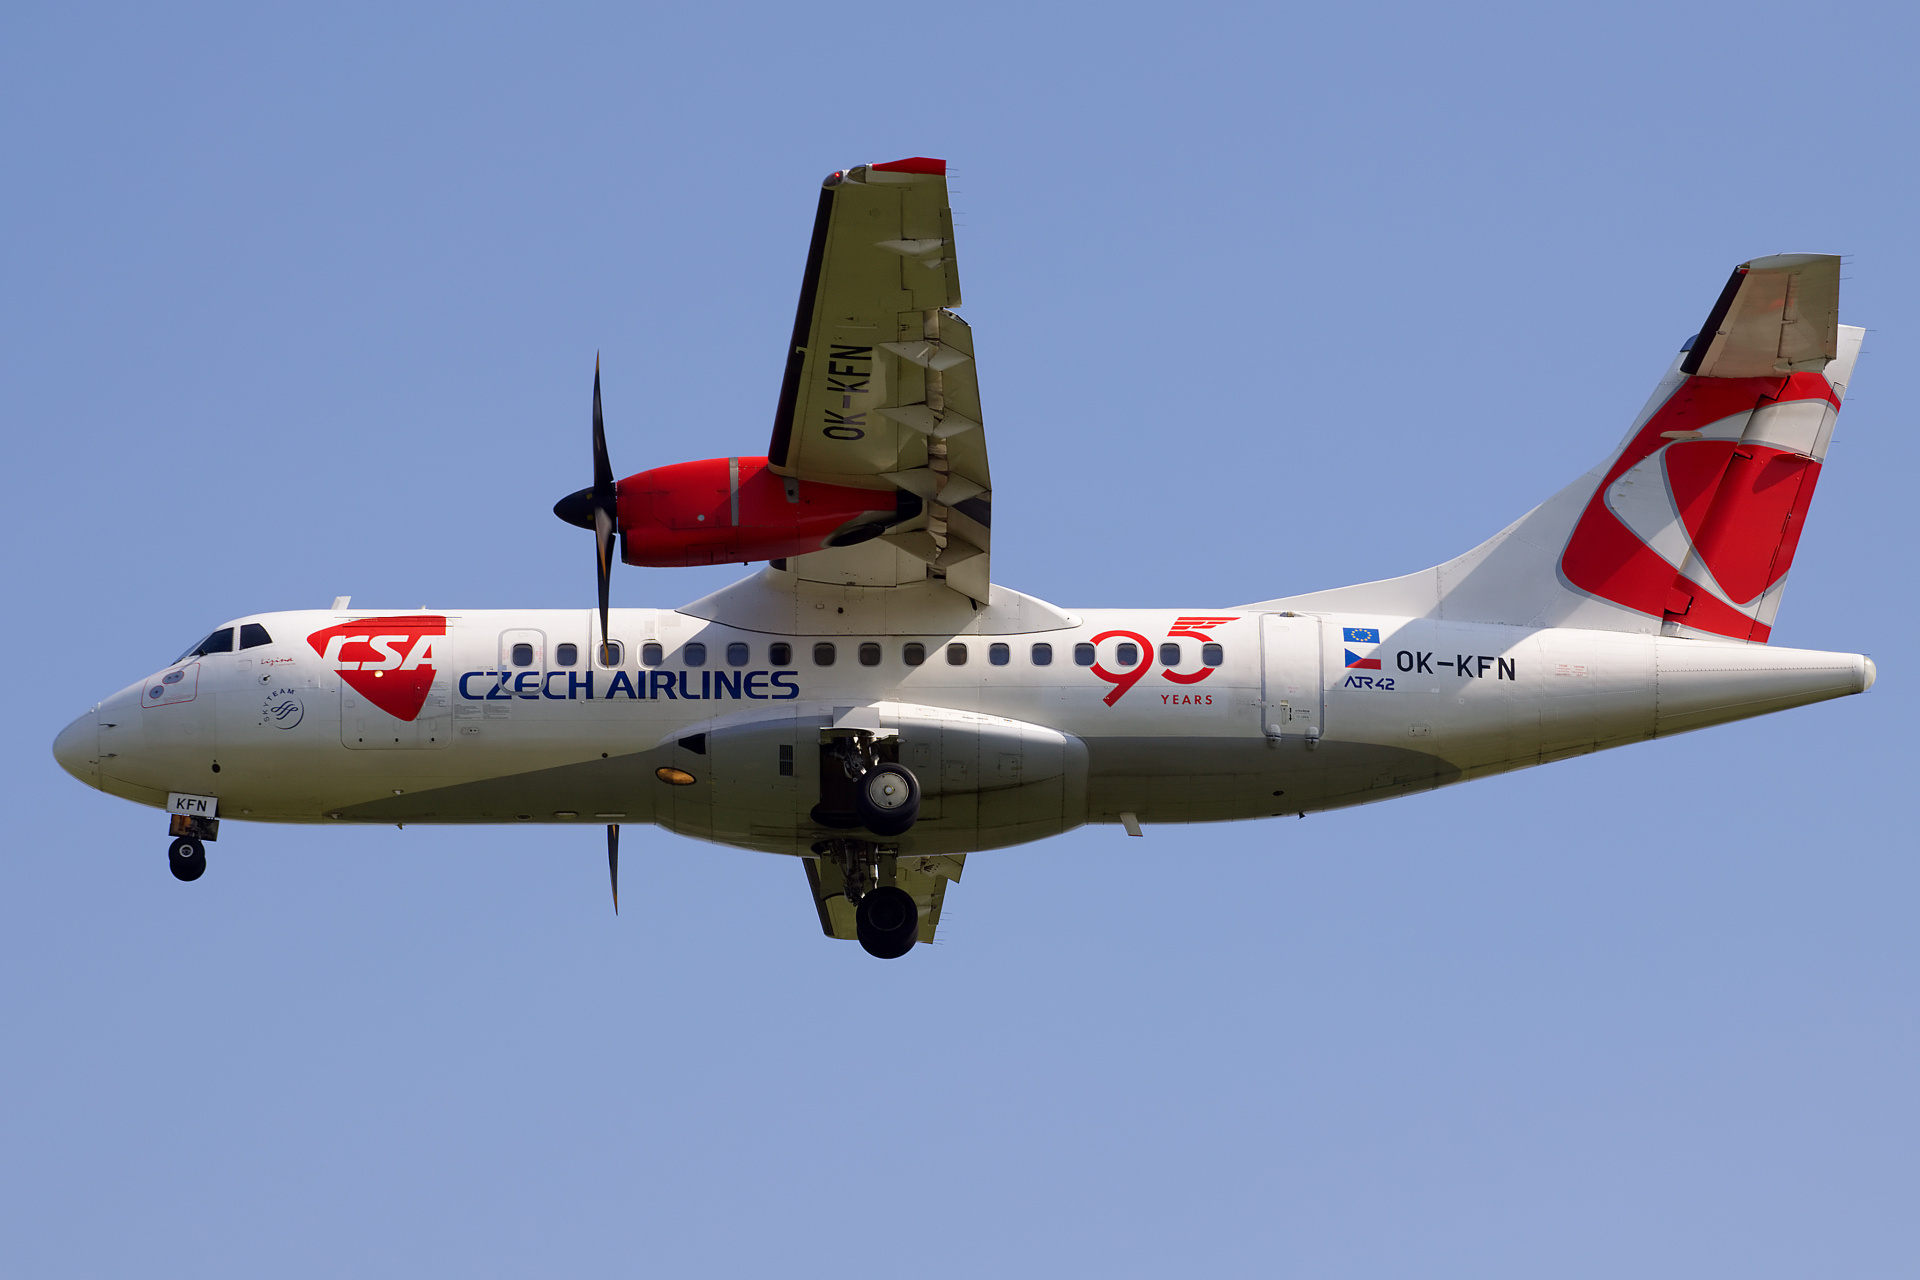 OK-KFN (malowanie 95. rocznicy) (Samoloty » Spotting na EPWA » ATR 42 » CSA Czech Airlines)